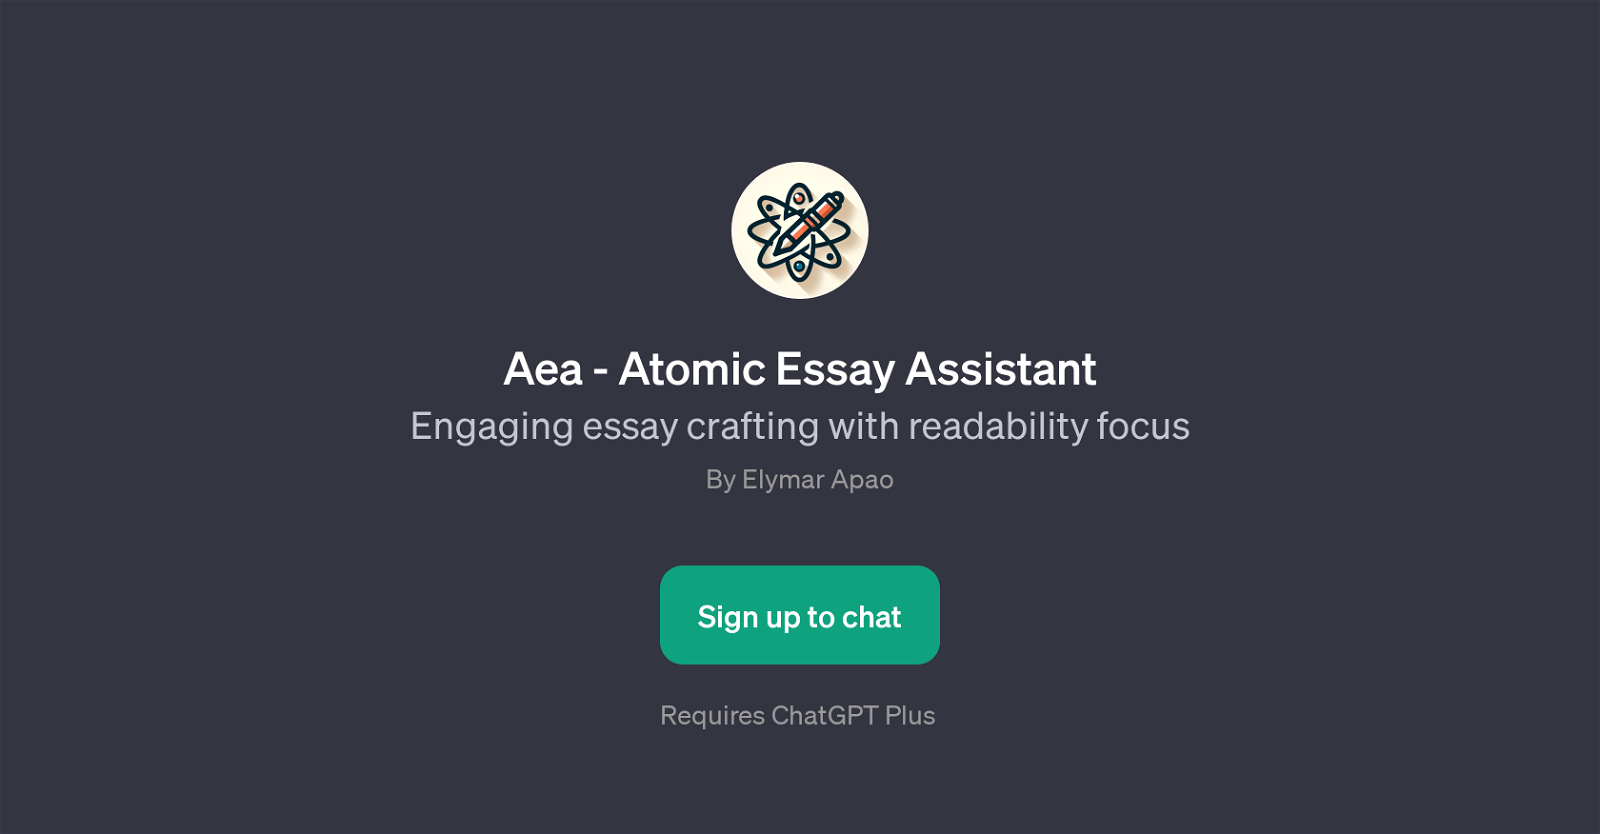 Aea - Atomic Essay Assistant website